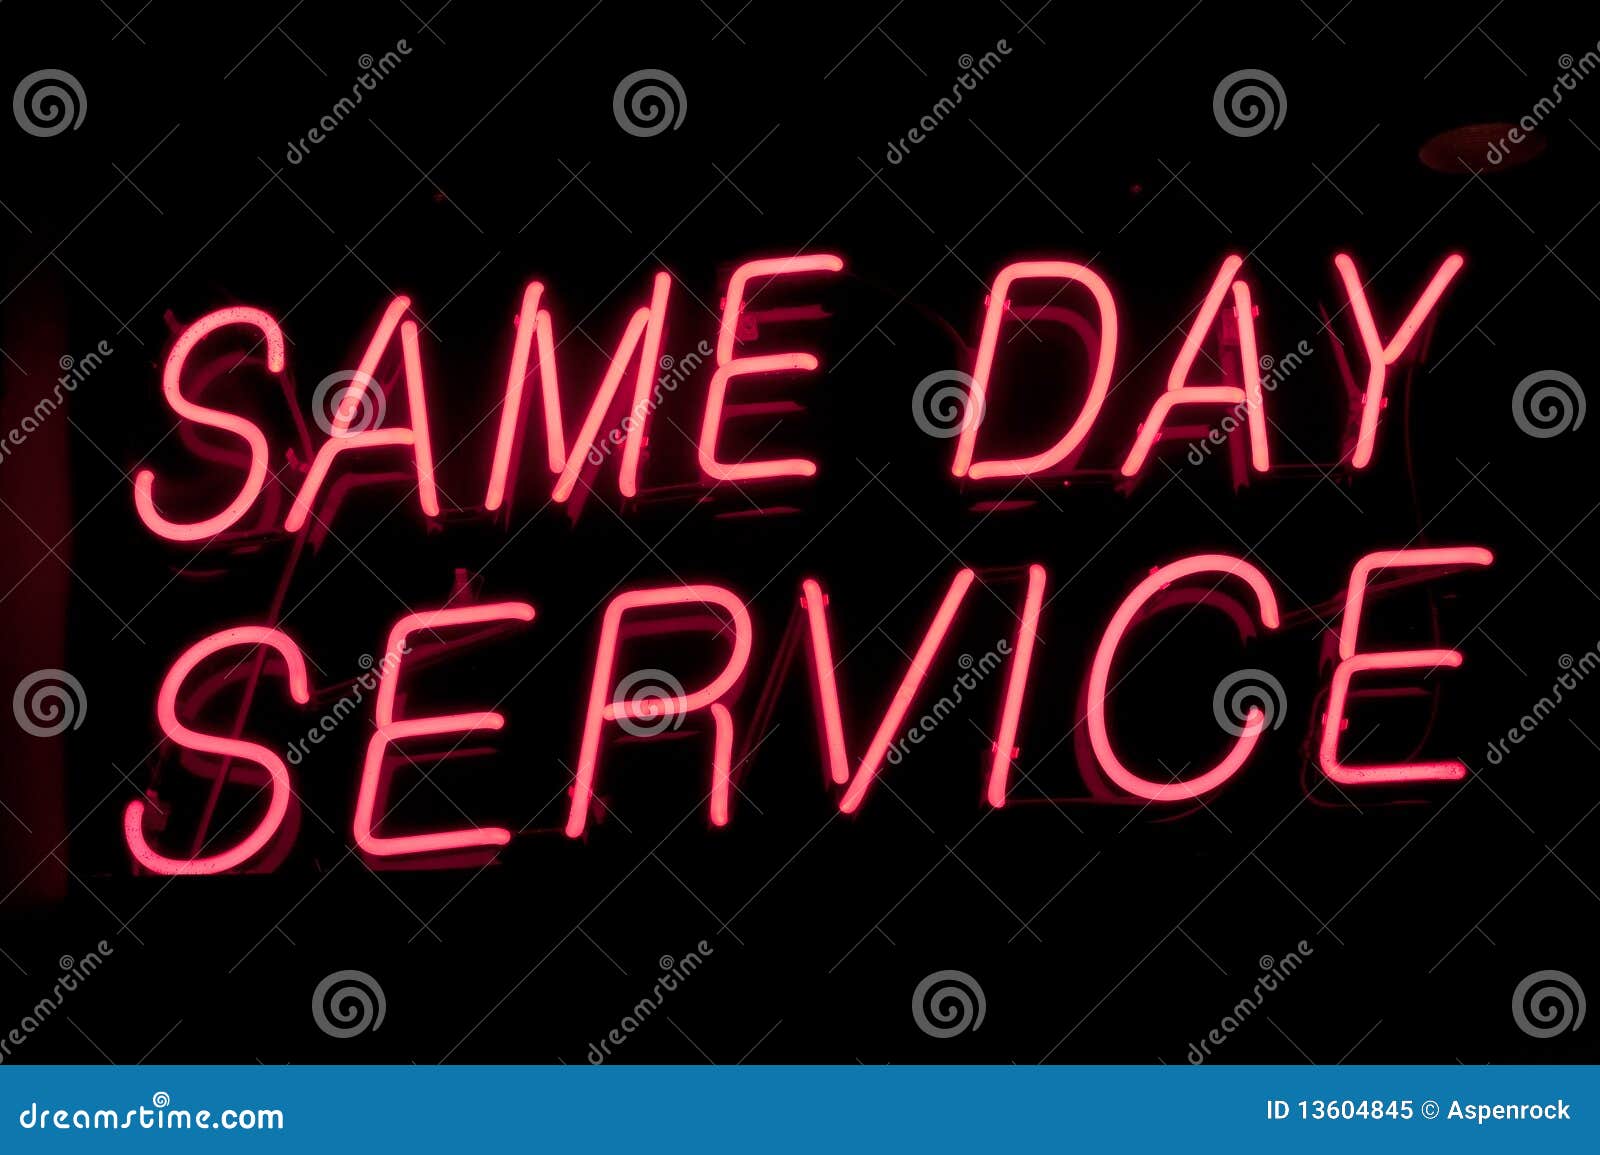 same day service sign